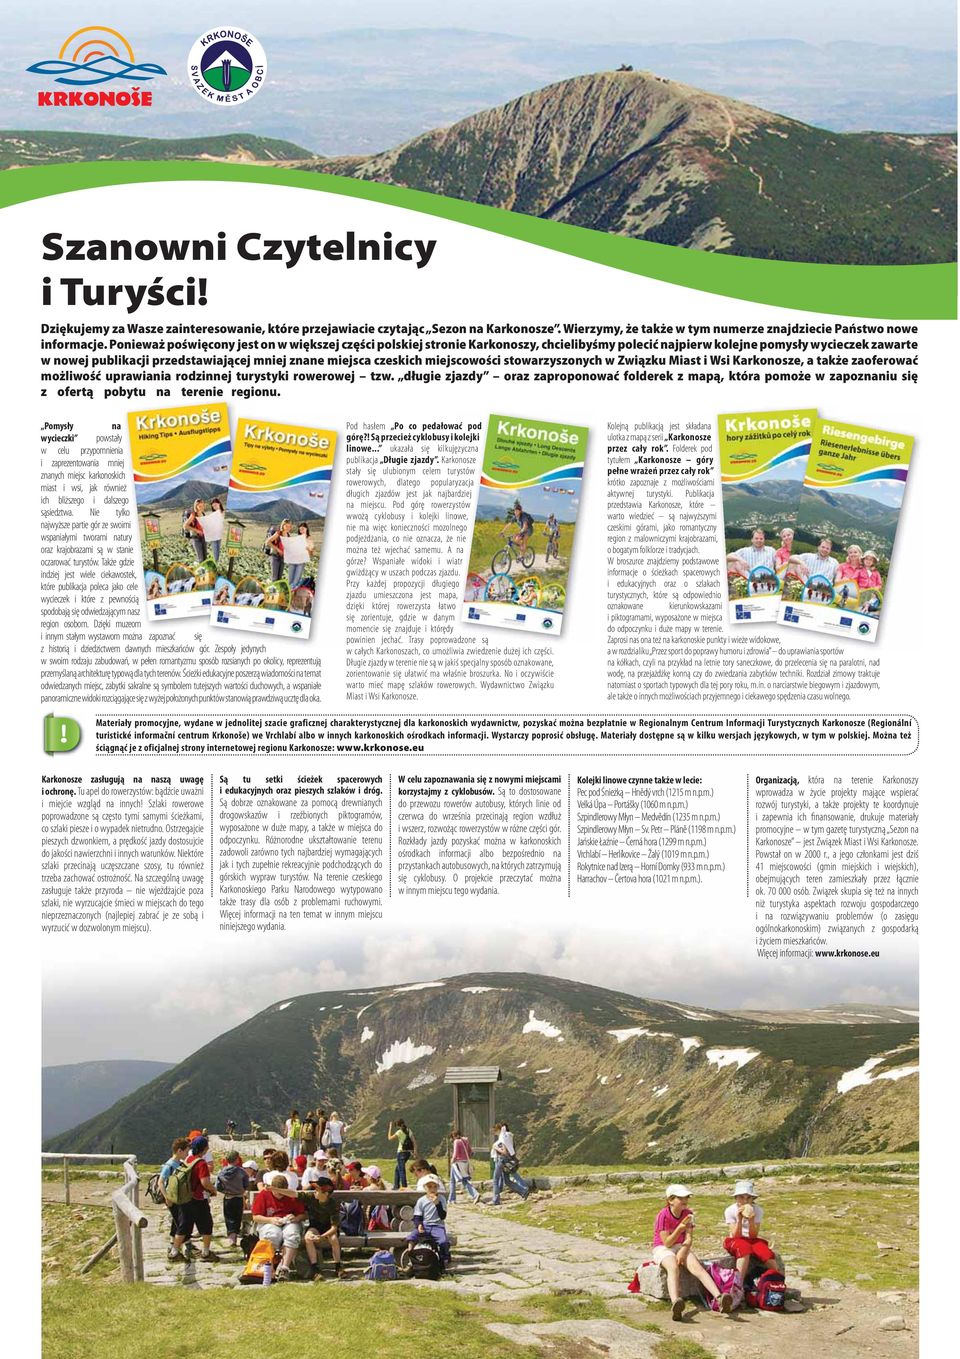 czeskich miejscowości stowarzyszonych w Związku Miast i Wsi Karkonosze, a także zaoferować możliwość uprawiania rodzinnej turystyki rowerowej tzw.